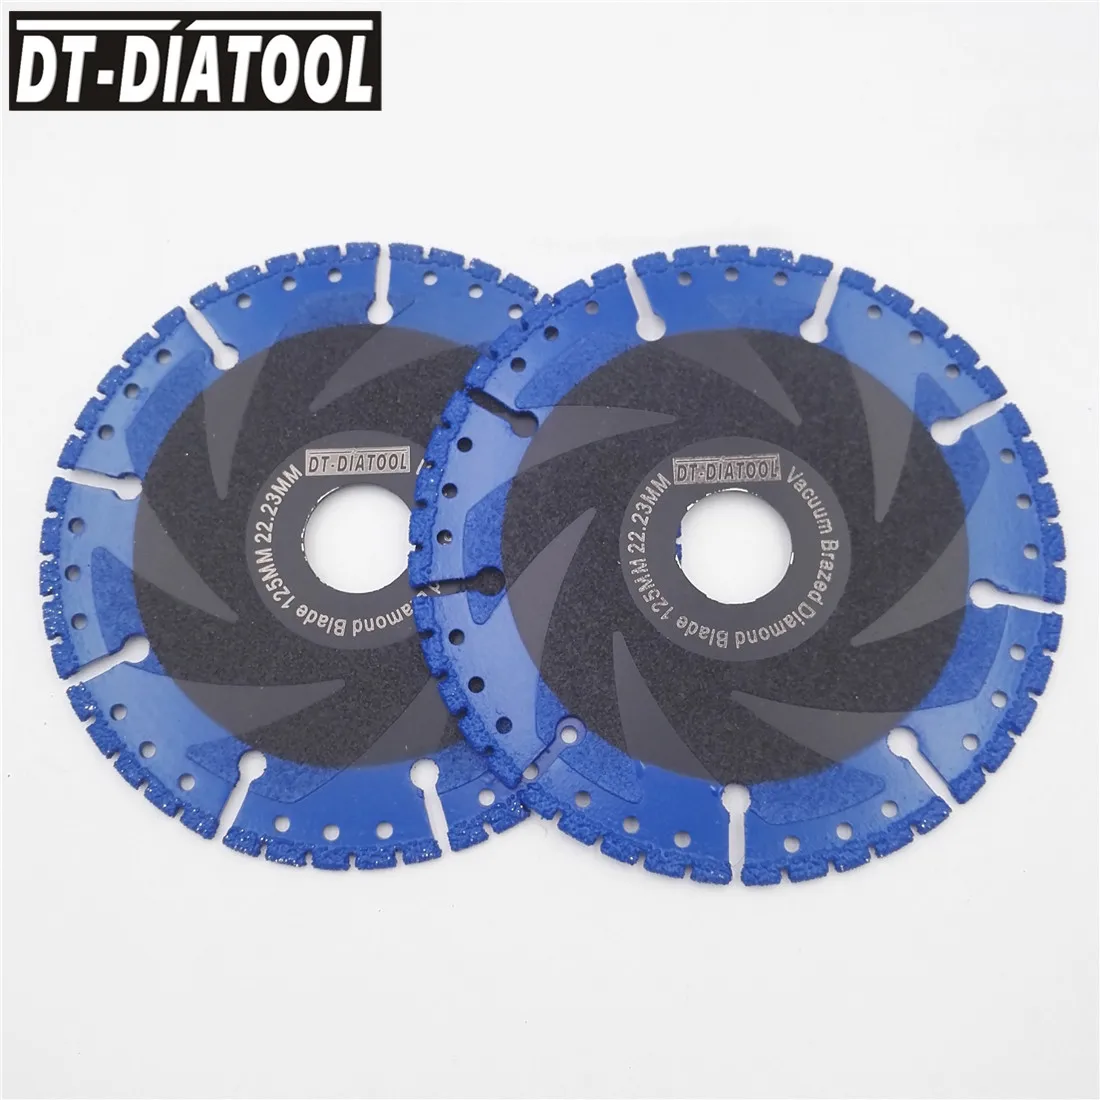 DT-DIATOOL 2 шт. 5 "вакуумной пайки Алмазные Режущие диск все назначения пилы 125 мм спасения Алмазный диск